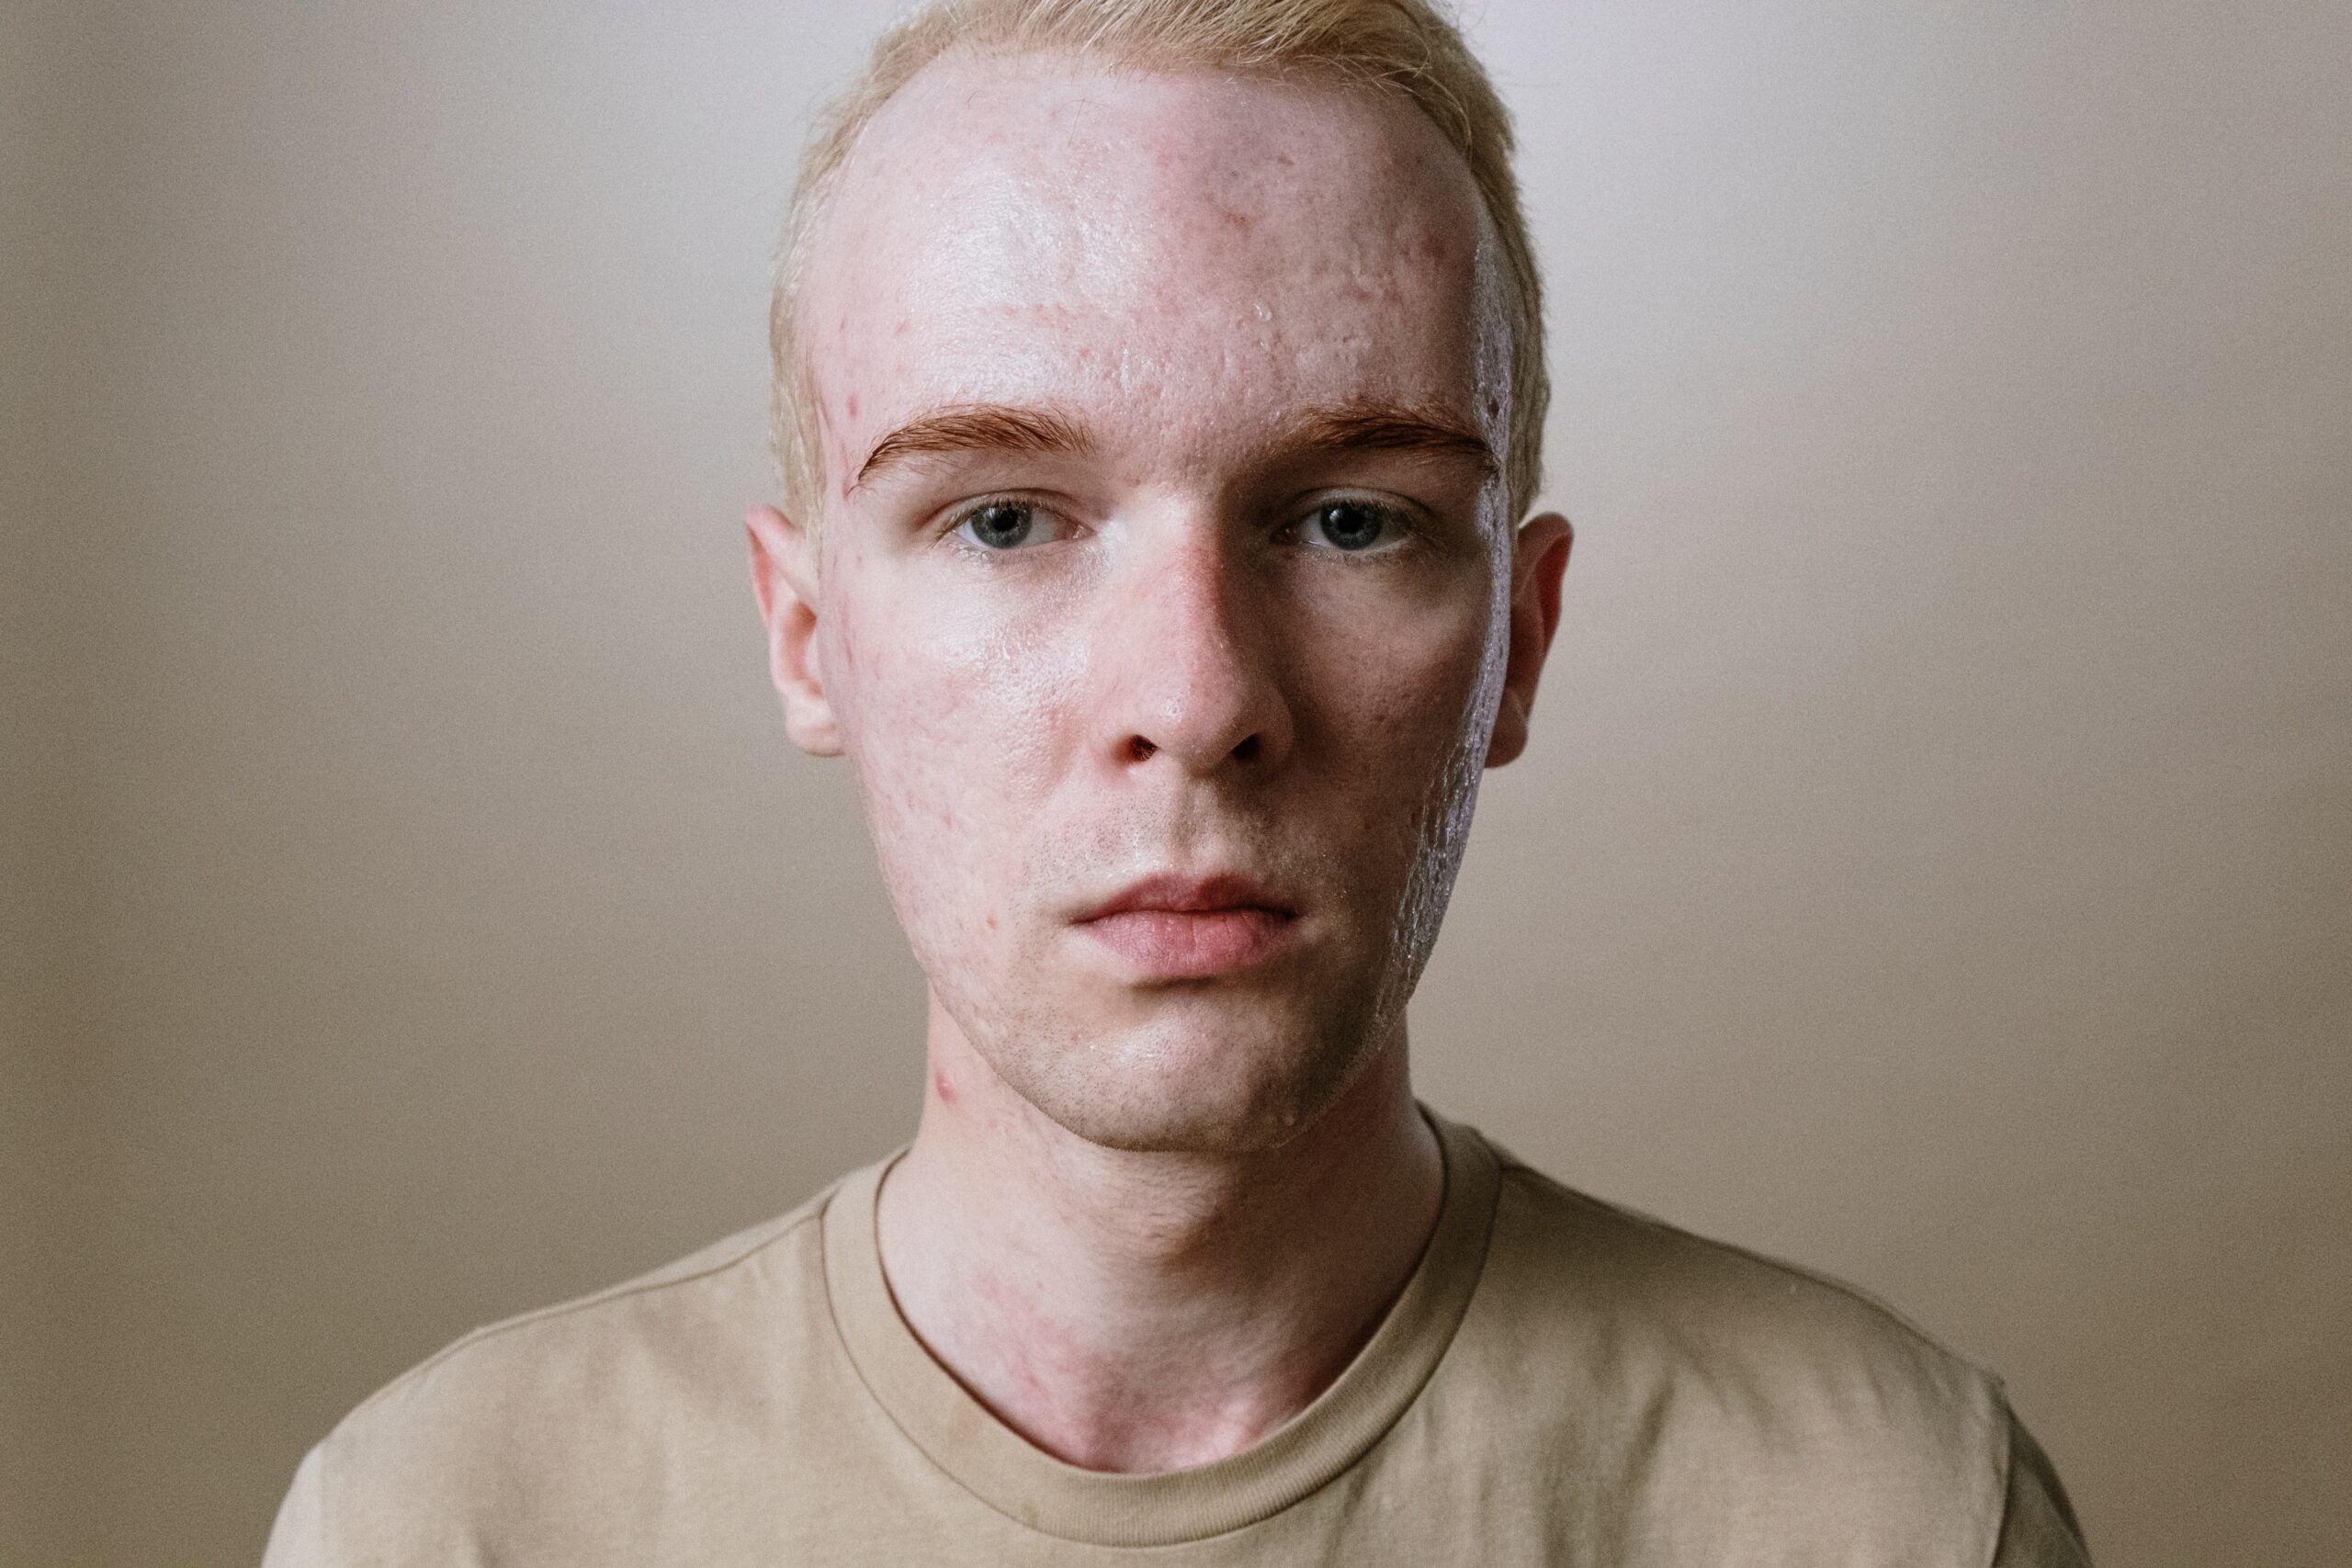 Acne oily skin white male